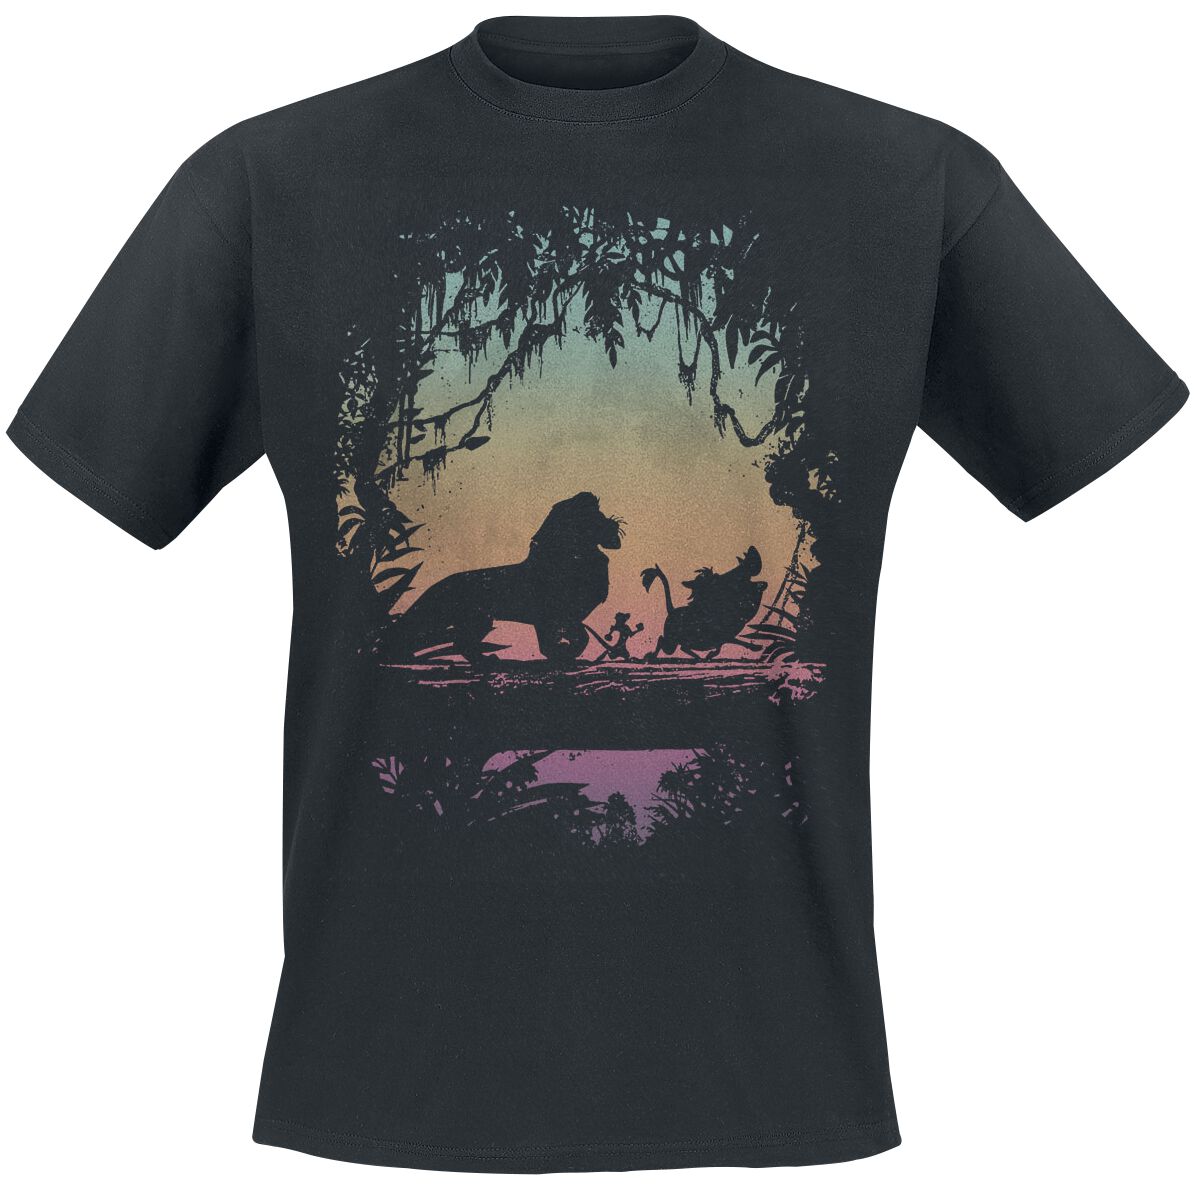 Der König der Löwen - Disney T-Shirt - Eastern Trail - M bis XXL - für Männer - Größe XL - schwarz  - Lizenzierter Fanartikel